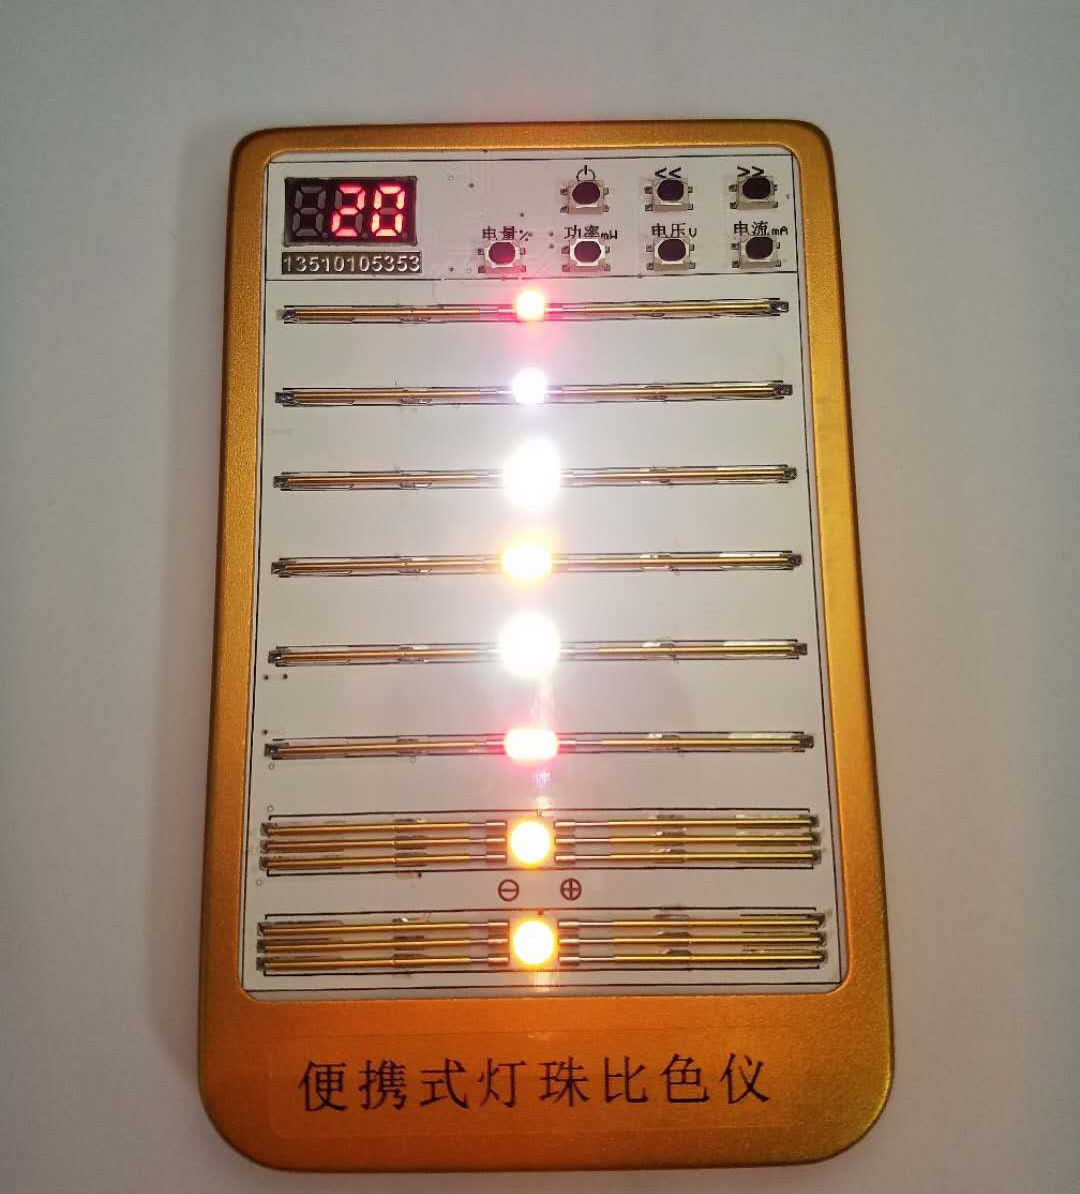 专业便携式灯珠比色仪之深圳PCB抄板公司制作开发